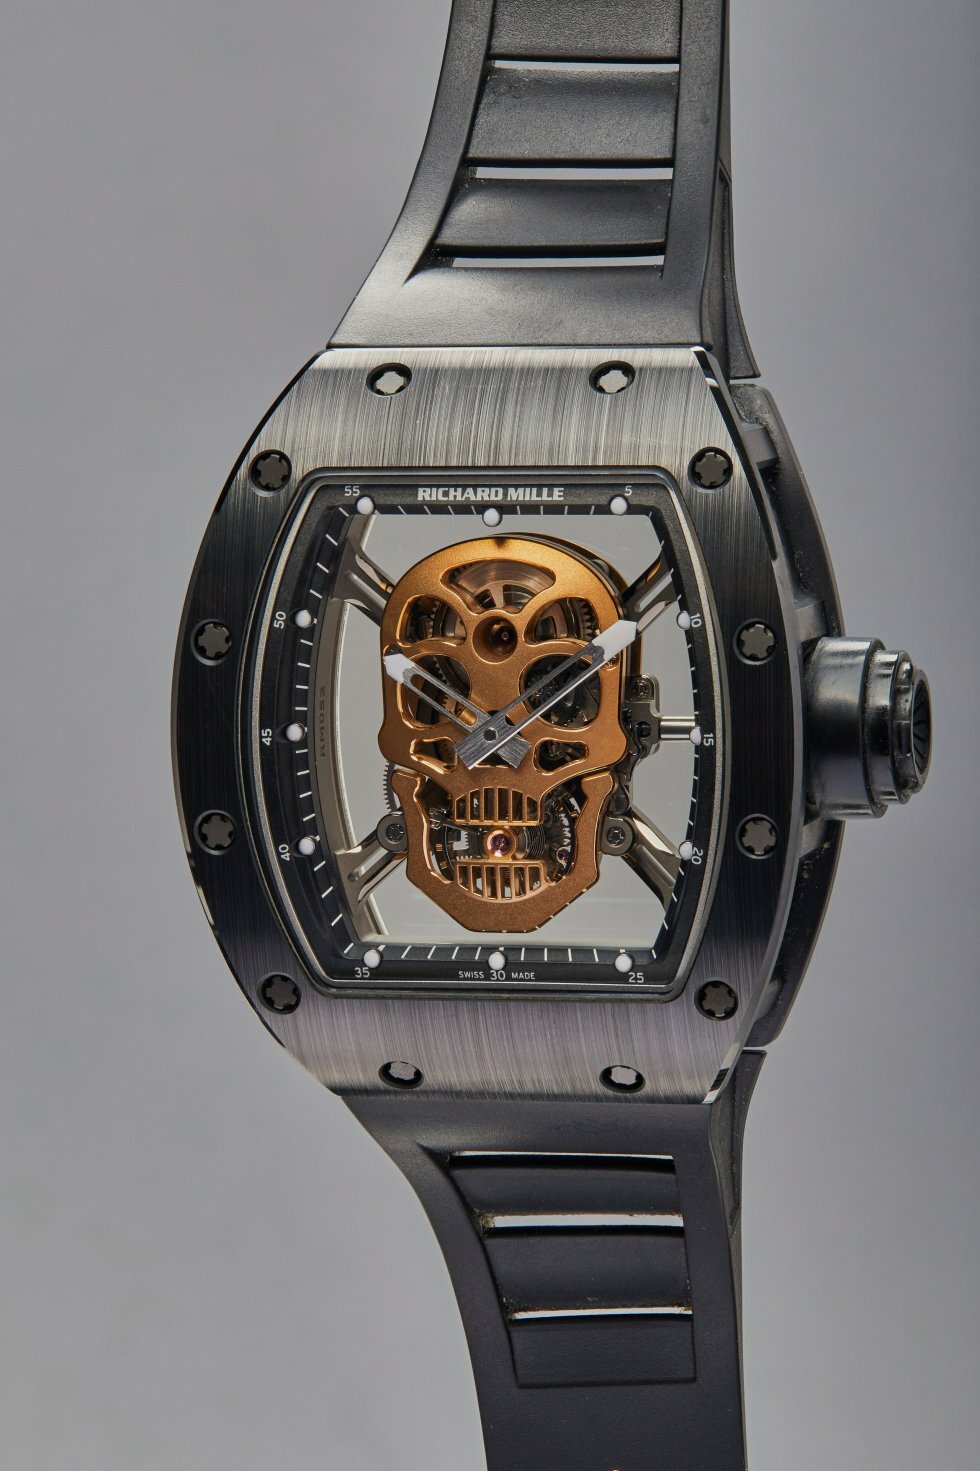 Richard Mille RM052-01 Tourbillon Skull TZP Nano-Ceramic - Sylvester Stallones ursamling bortauktioneret til rekordhøj pris: Se 5 af actionstjernens ure 